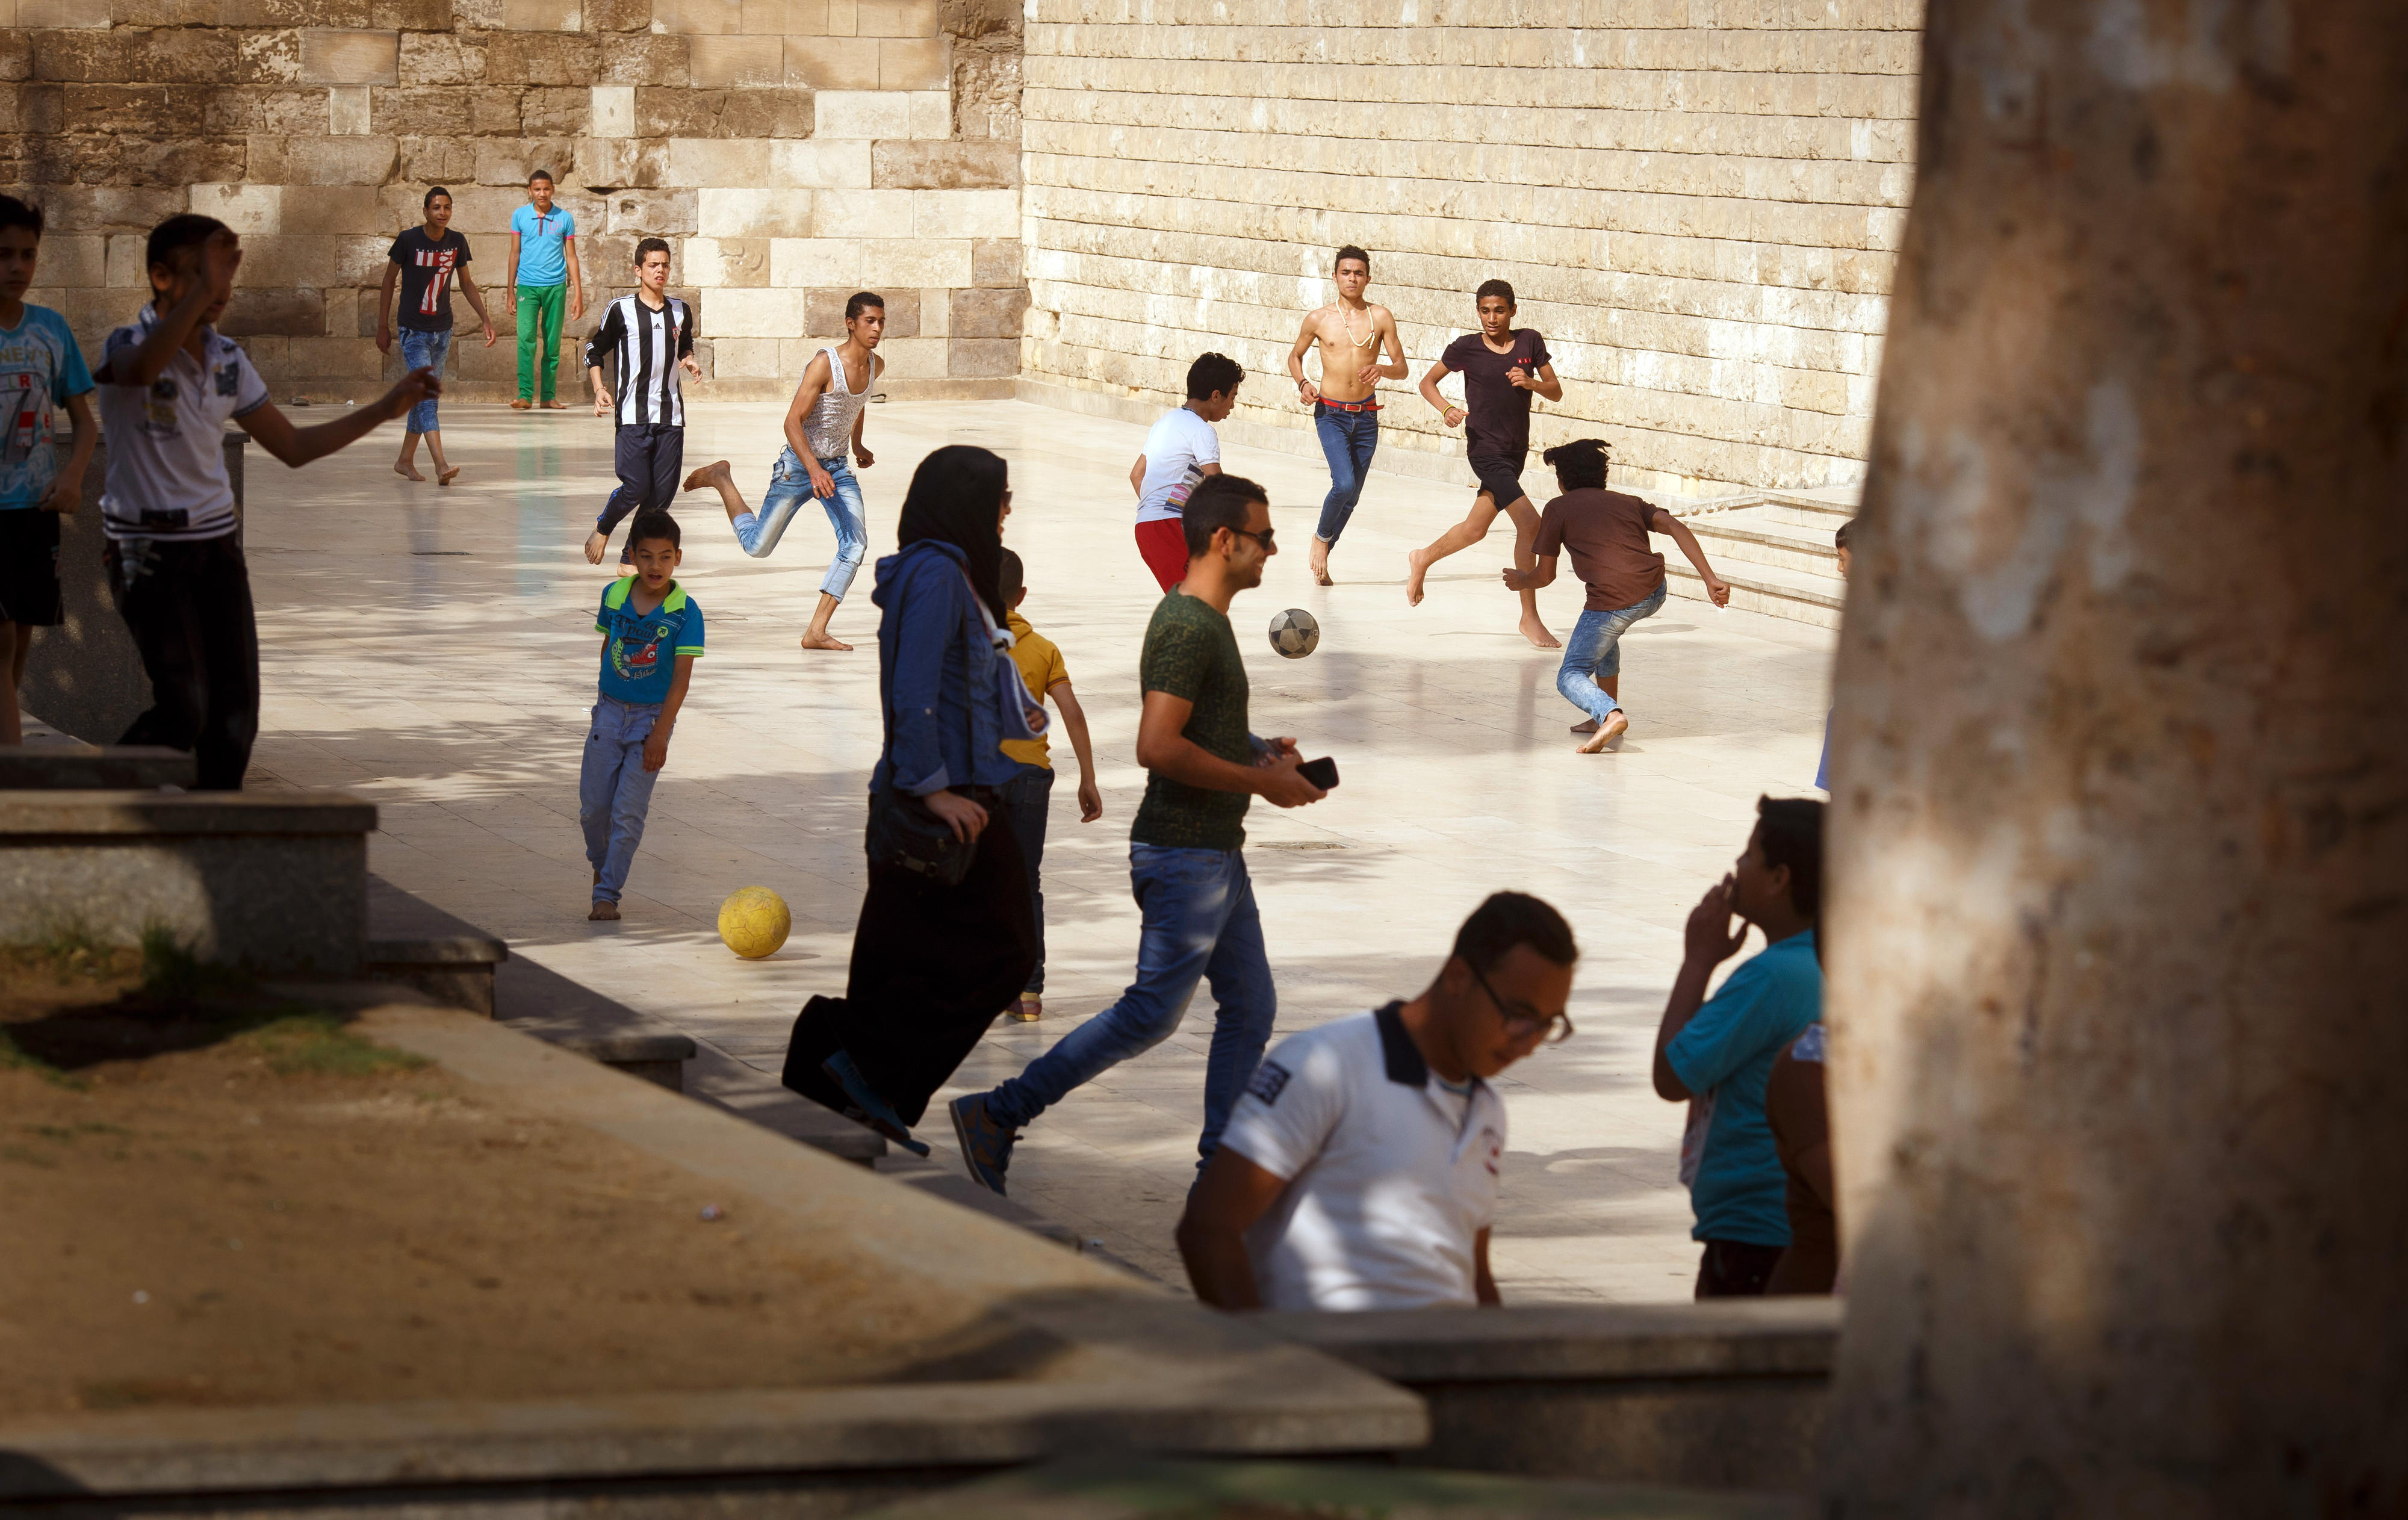 Kinder und Jugendliche spielen Fußball in der Altstadt von Kairo, Ägypten.